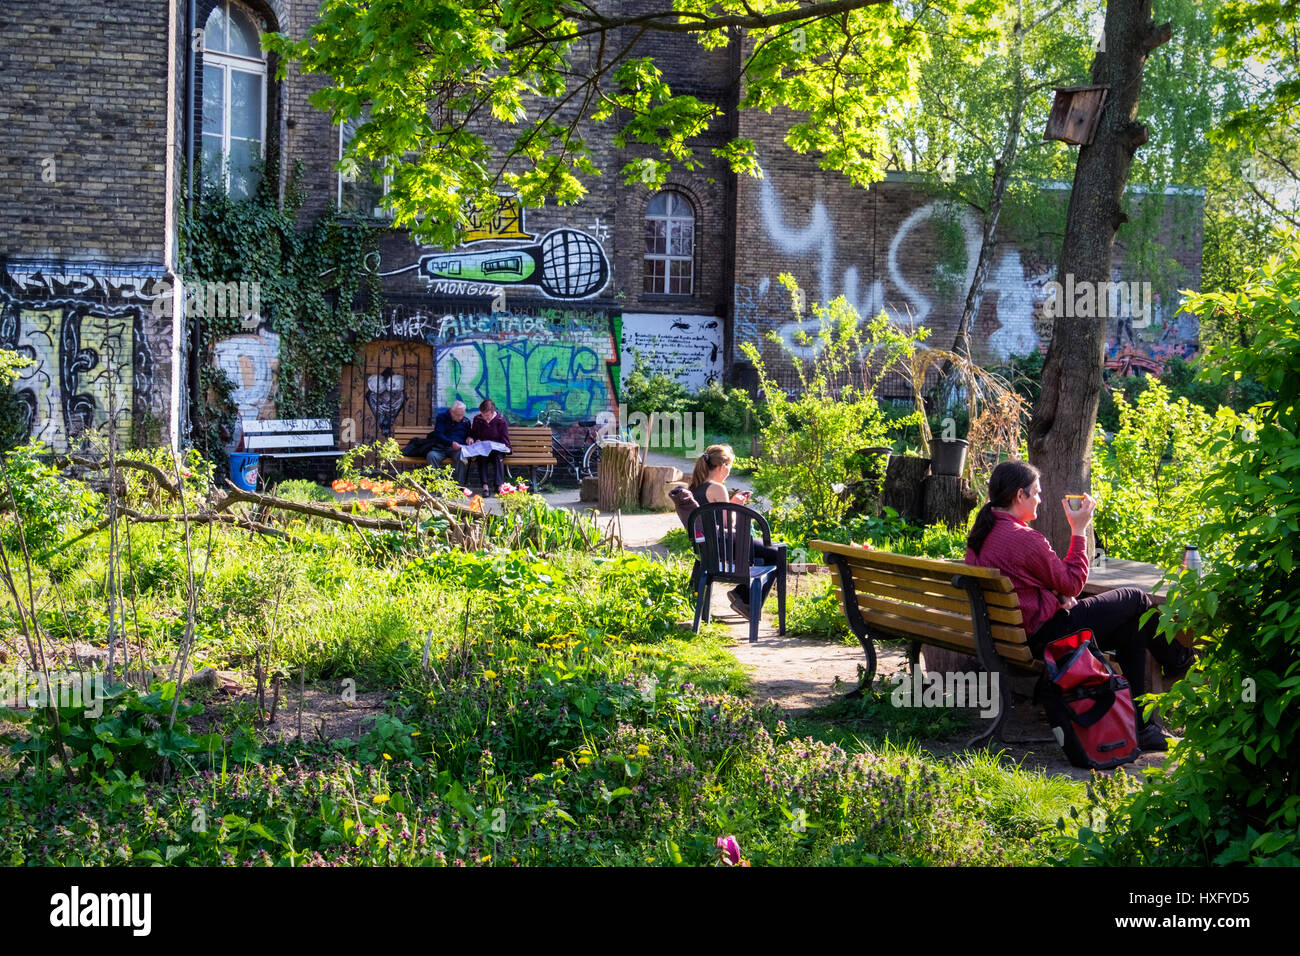 Berlino Kreuzberg. Il ton Steine giardino, comunità comunale giardinaggio urbano accanto alla Georg von Rauch casa.Le persone a rilassarsi in sun Foto Stock